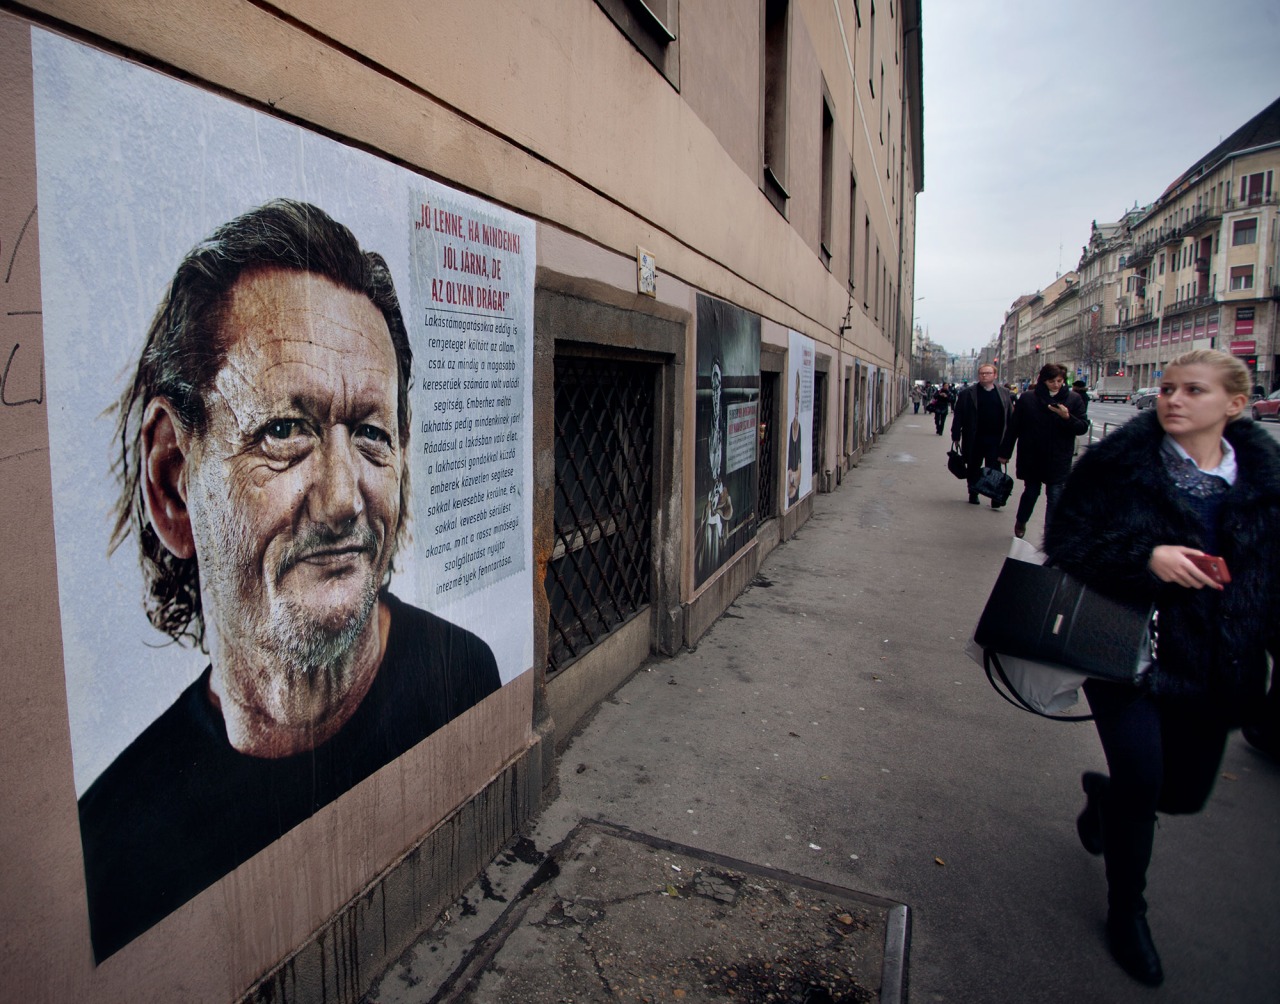 Megrázó hajléktalanportrék lepték el Budapestet